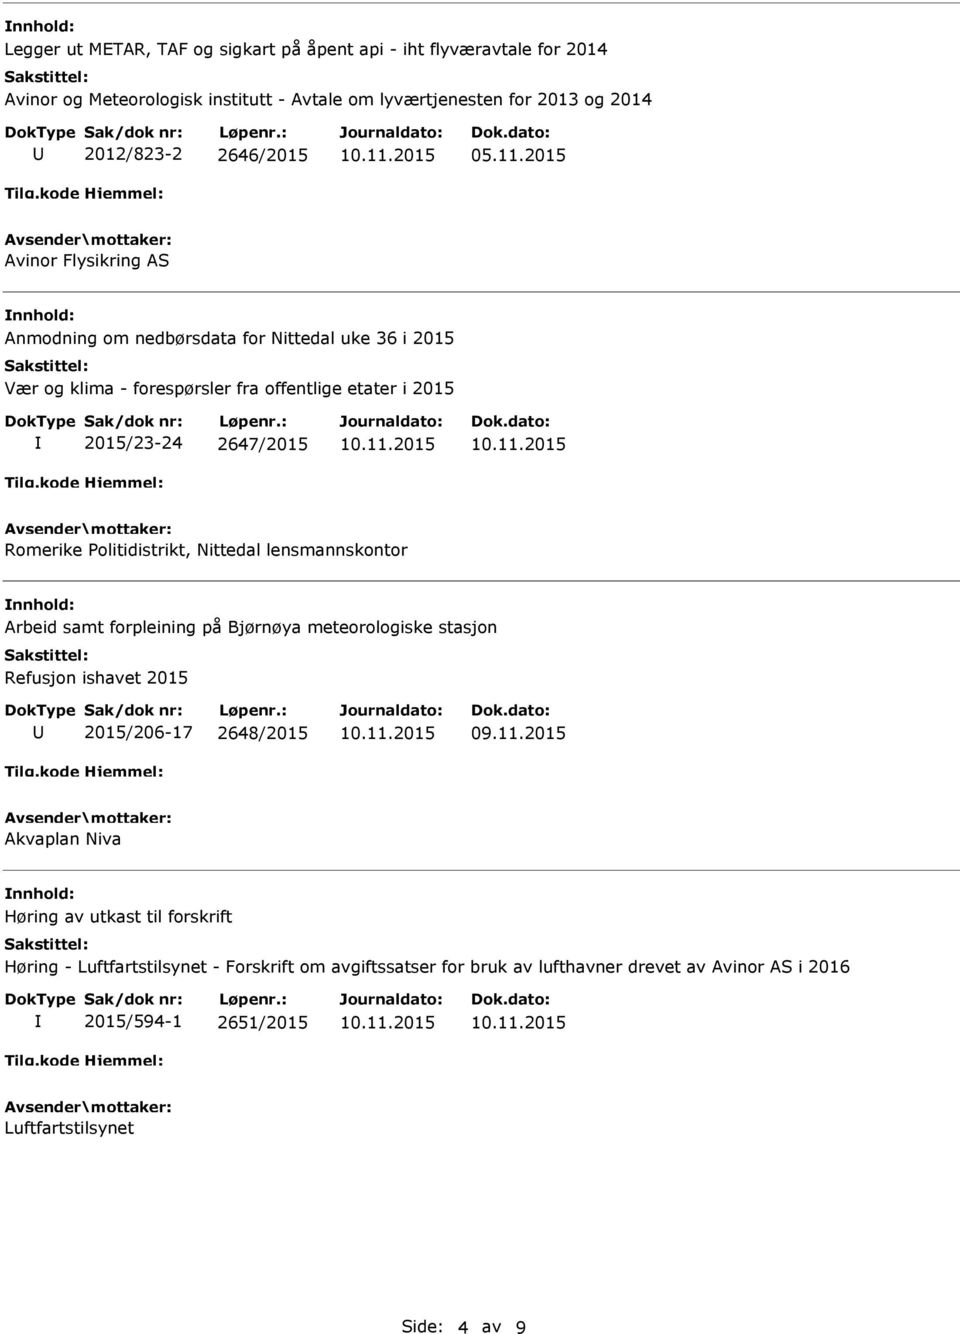 2015 Avinor Flysikring AS Anmodning om nedbørsdata for Nittedal uke 36 i 2015 Vær og klima - forespørsler fra offentlige etater i 2015 2015/23-24 2647/2015 Romerike